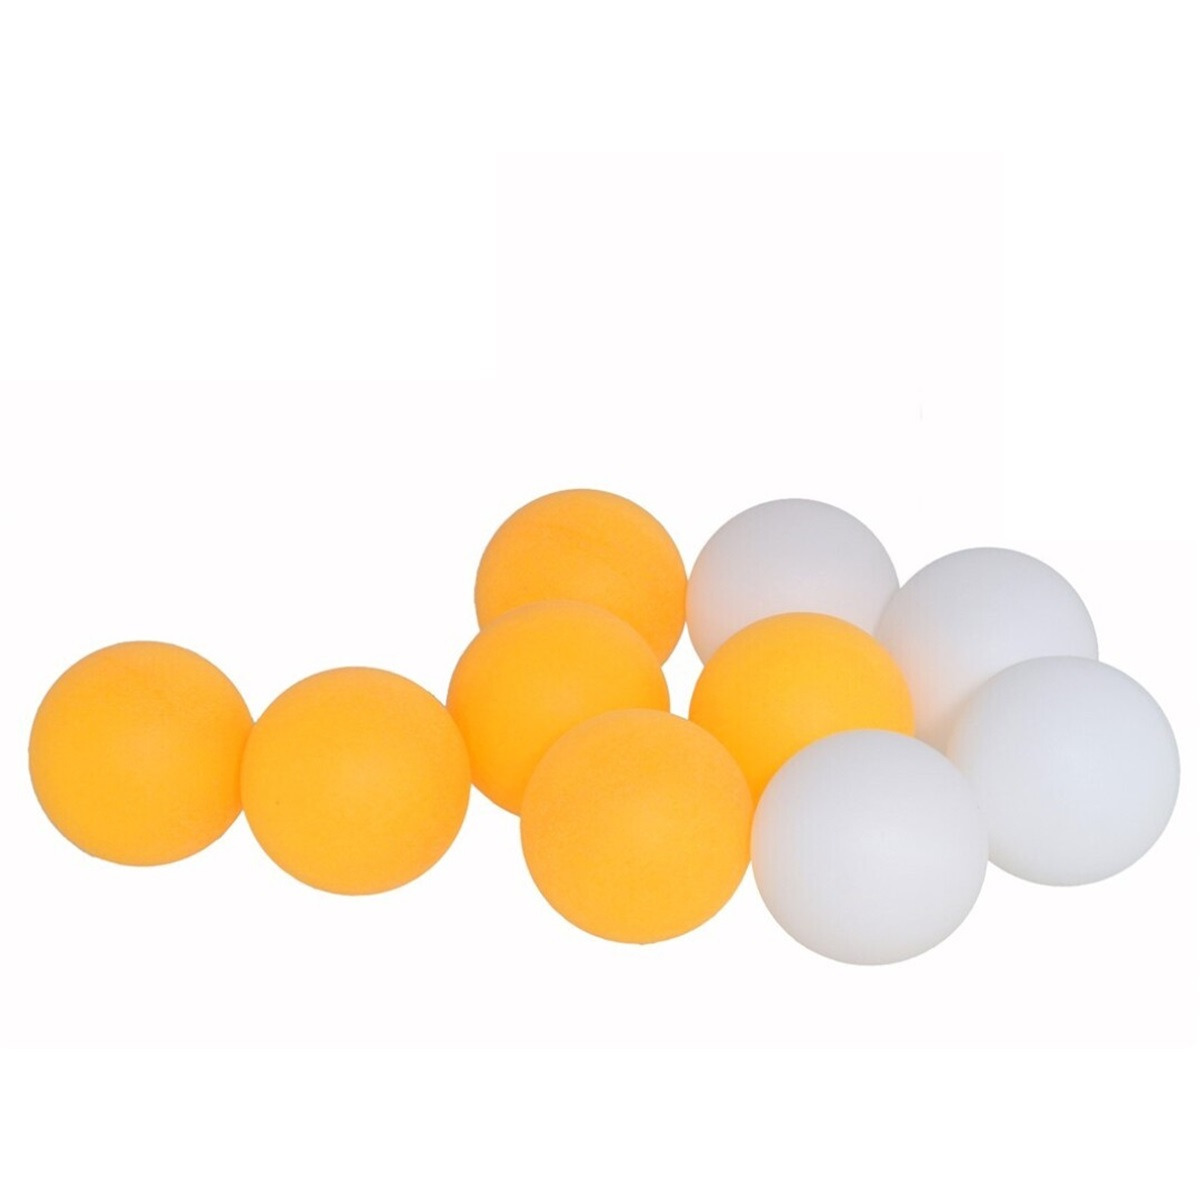 Tafeltennisballen setje - 20x balletjes - kunststof - geel/wit - pingpong -